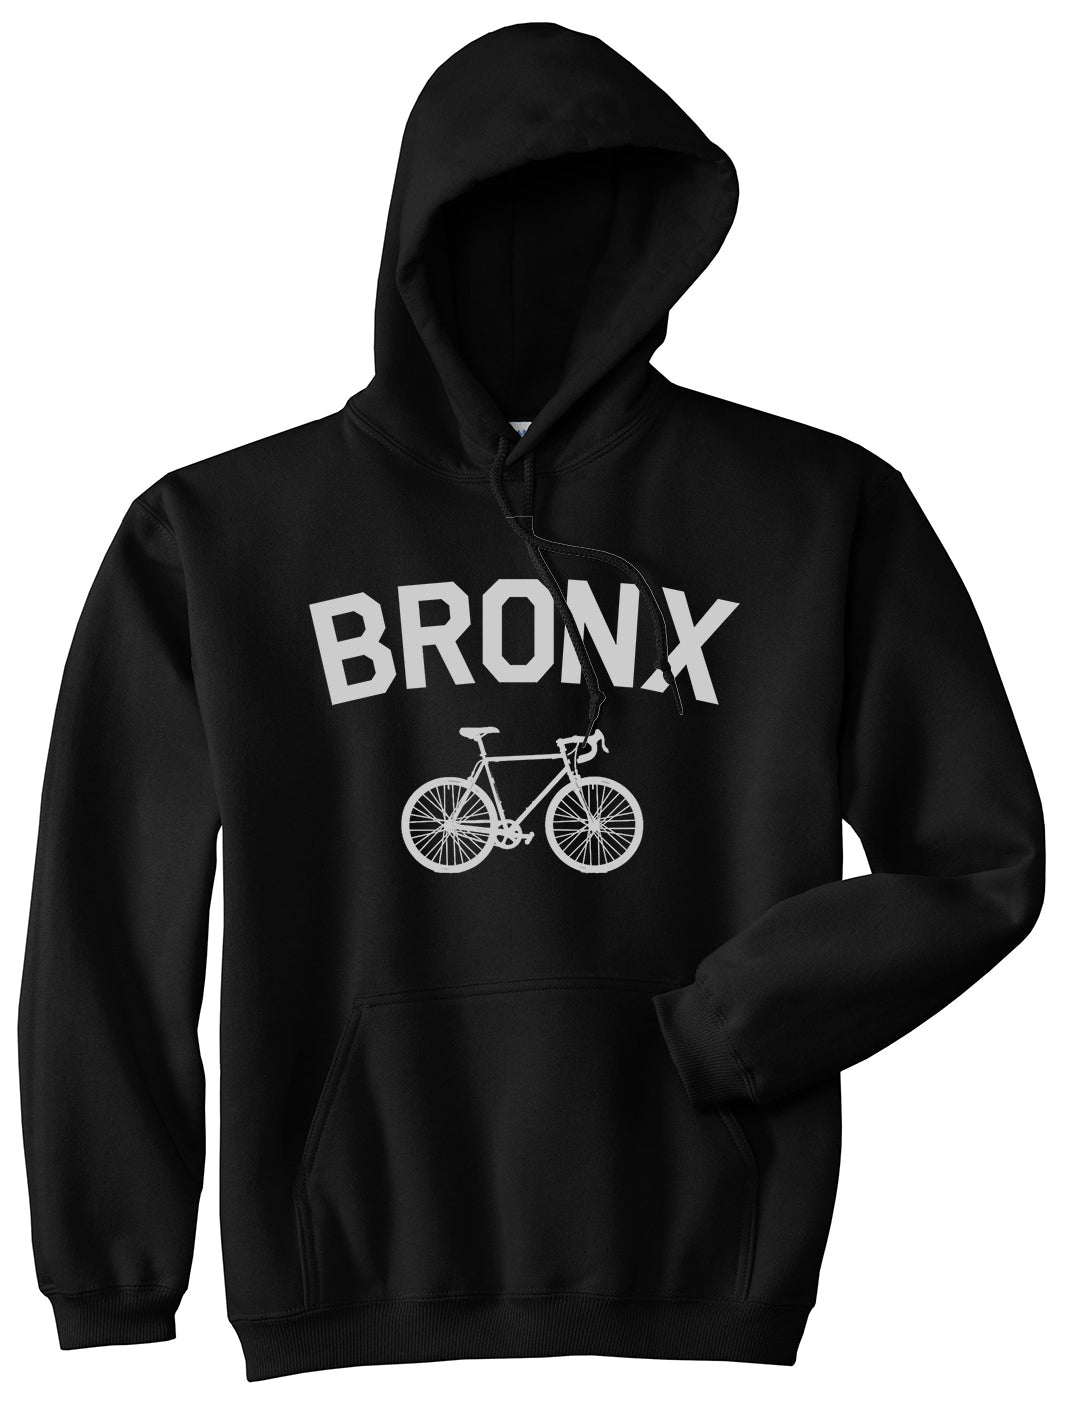 Bronx Vintage Bike Cycling Mens Pullover Hoodie Black